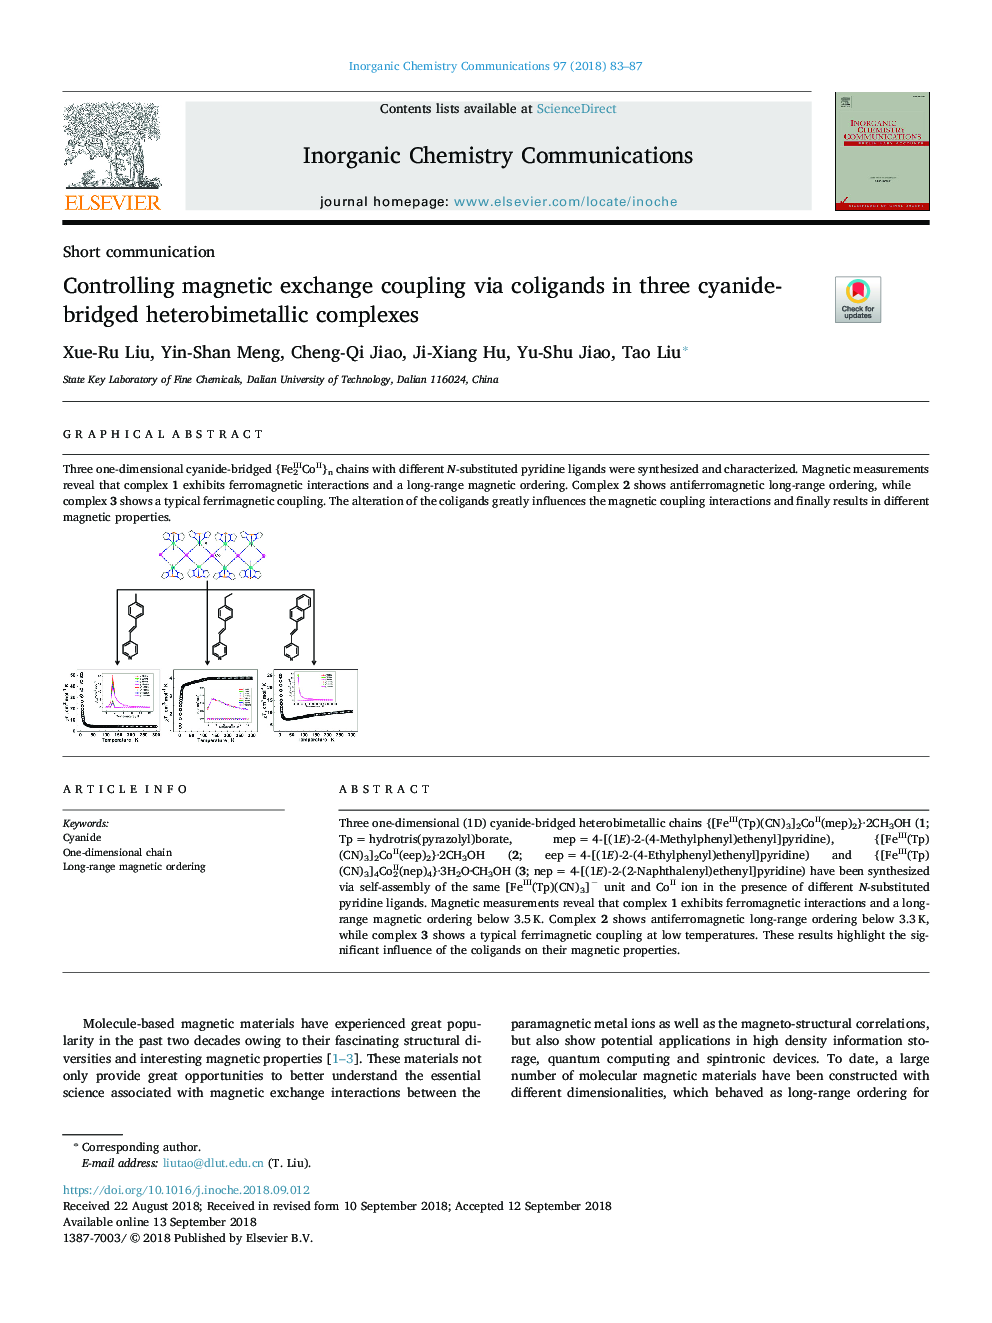 Controlling magnetic exchange coupling via coligands in three cyanide-bridged heterobimetallic complexes